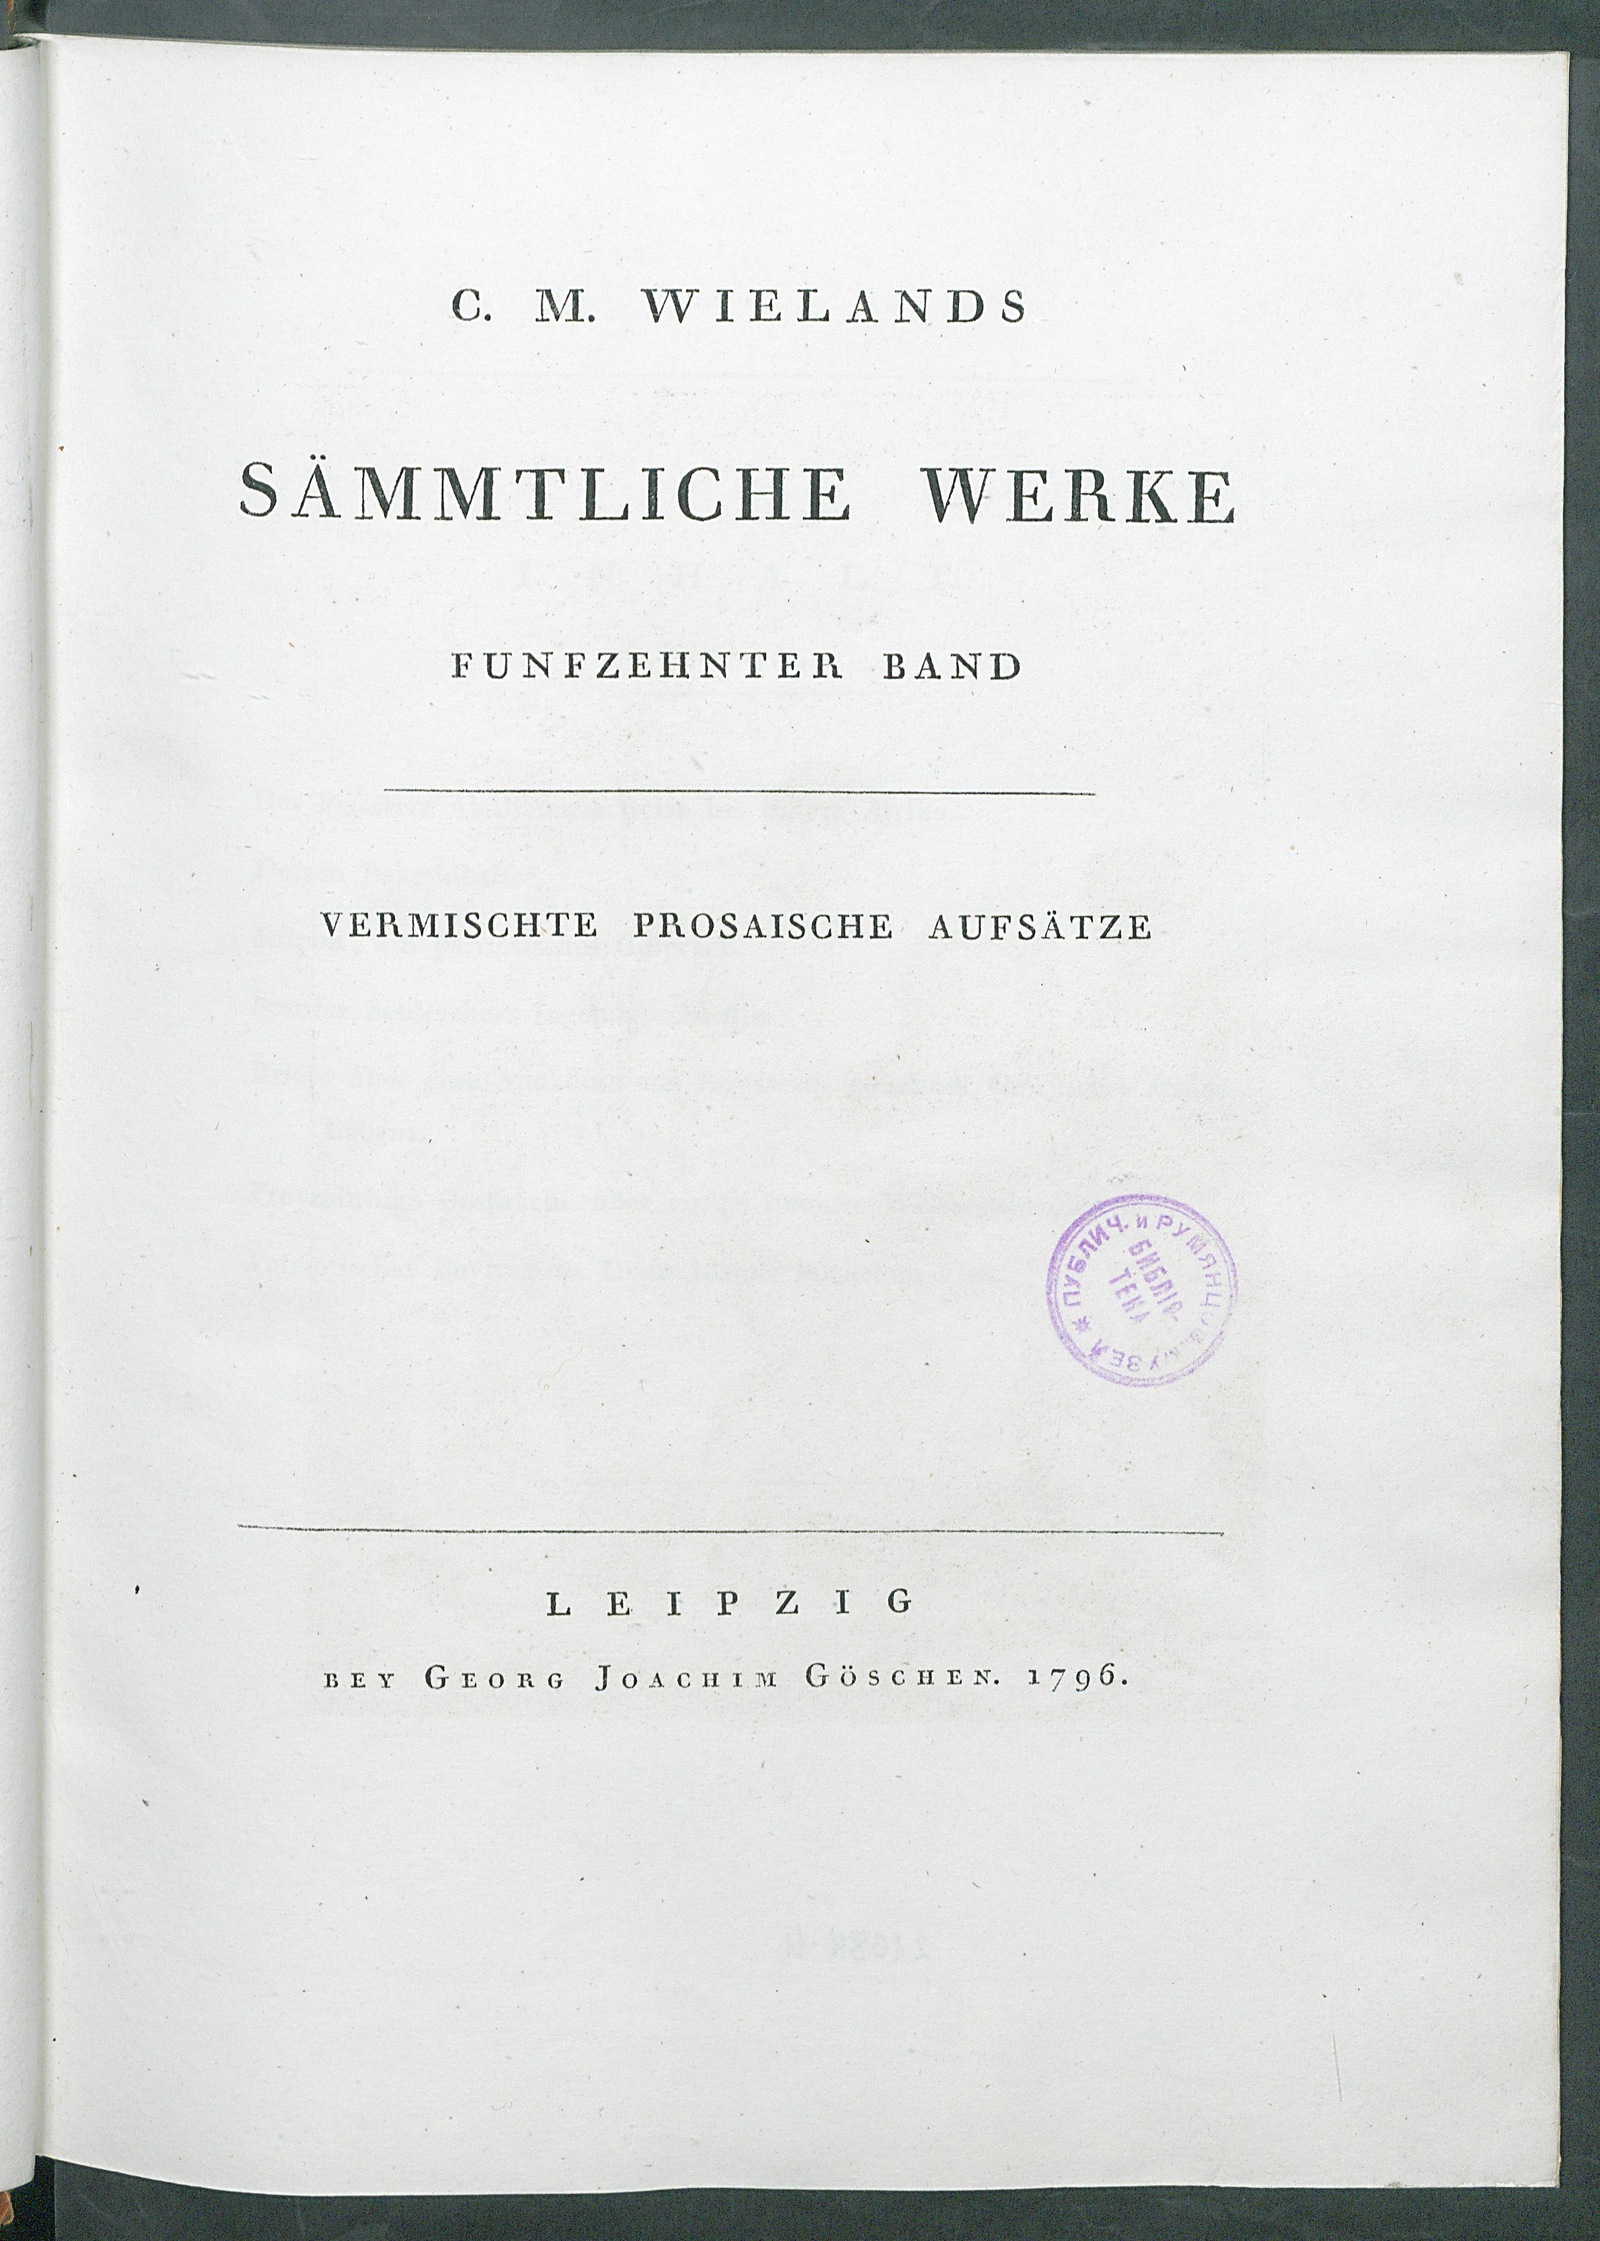 Изображение C. M. Wielands Sämmtliche Werke. Bd. 15. Vermischte prosaische Aufsätze